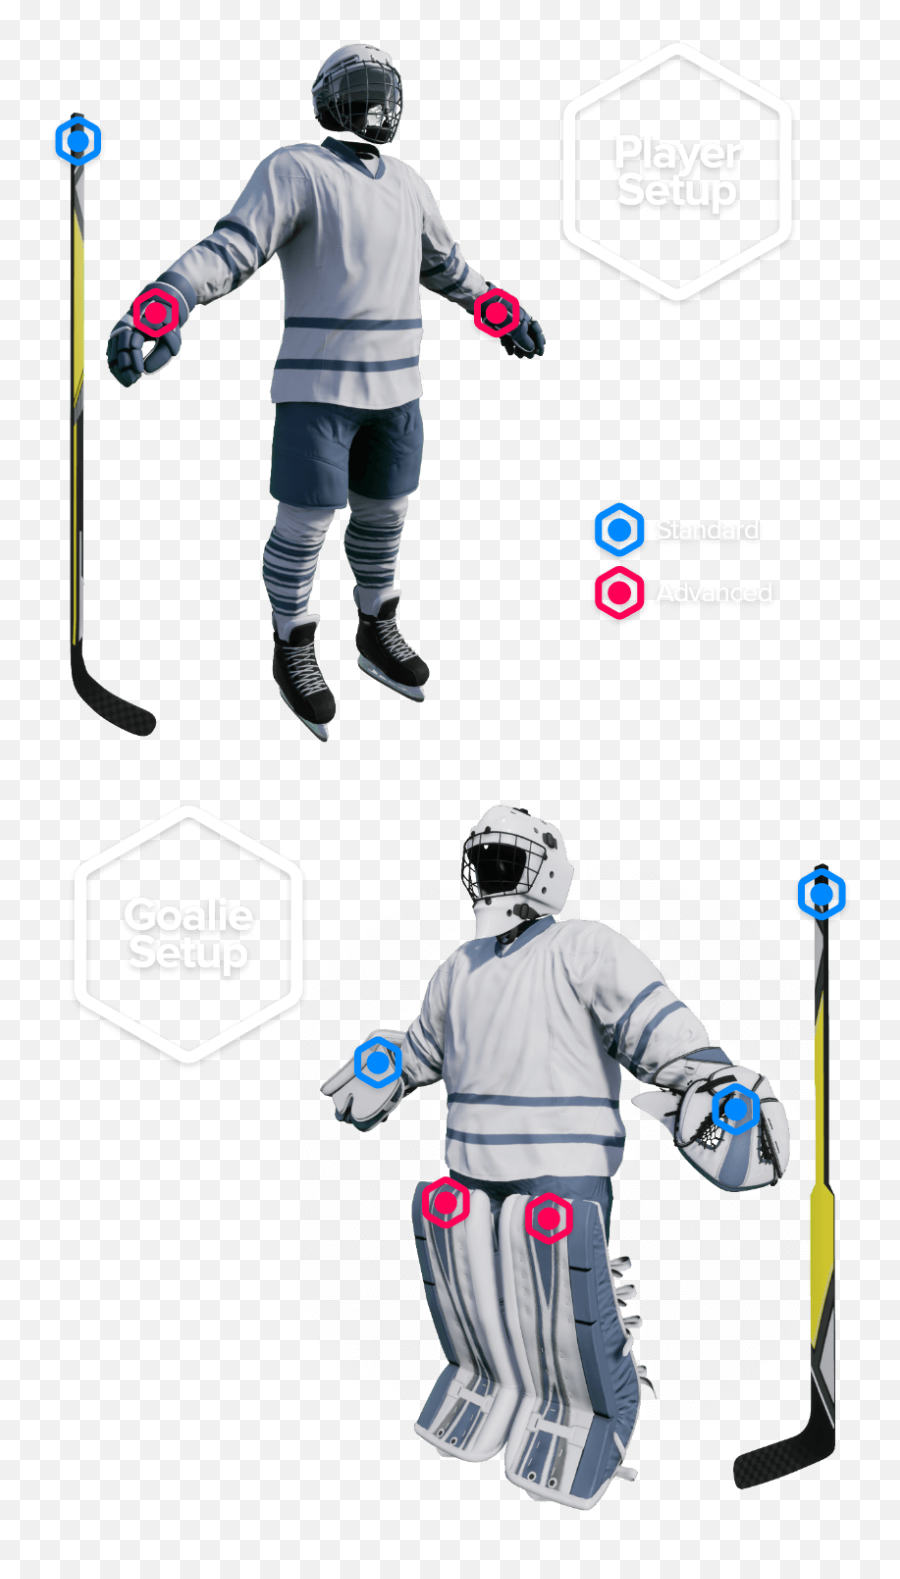 Nito Hockey - New Item To Hockey Ice Skating Png,Hockey Rink Png